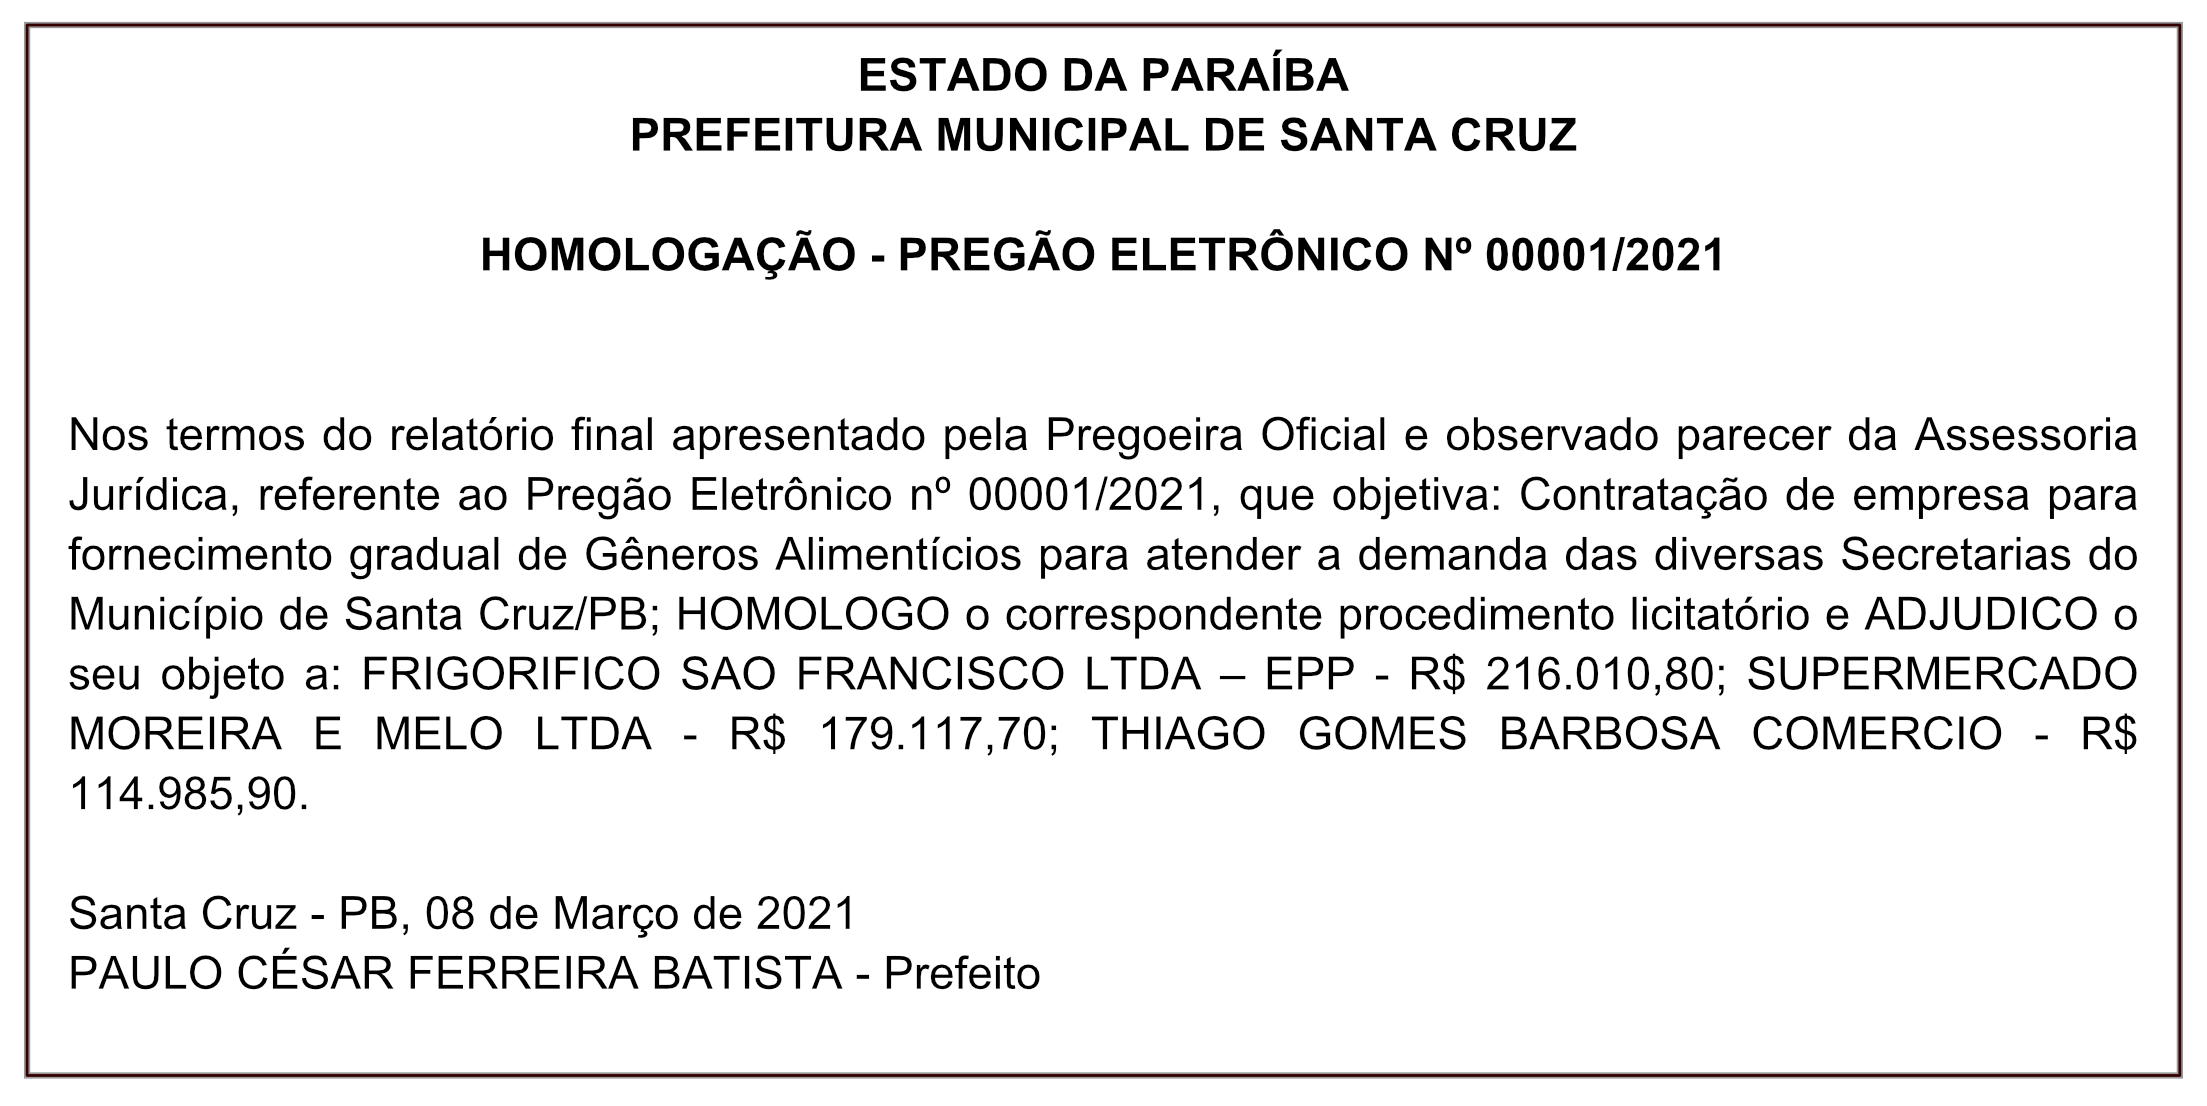 PREFEITURA MUNICIPAL DE SANTA CRUZ – HOMOLOGAÇÃO – PREGÃO ELETRÔNICO Nº 00001/2021